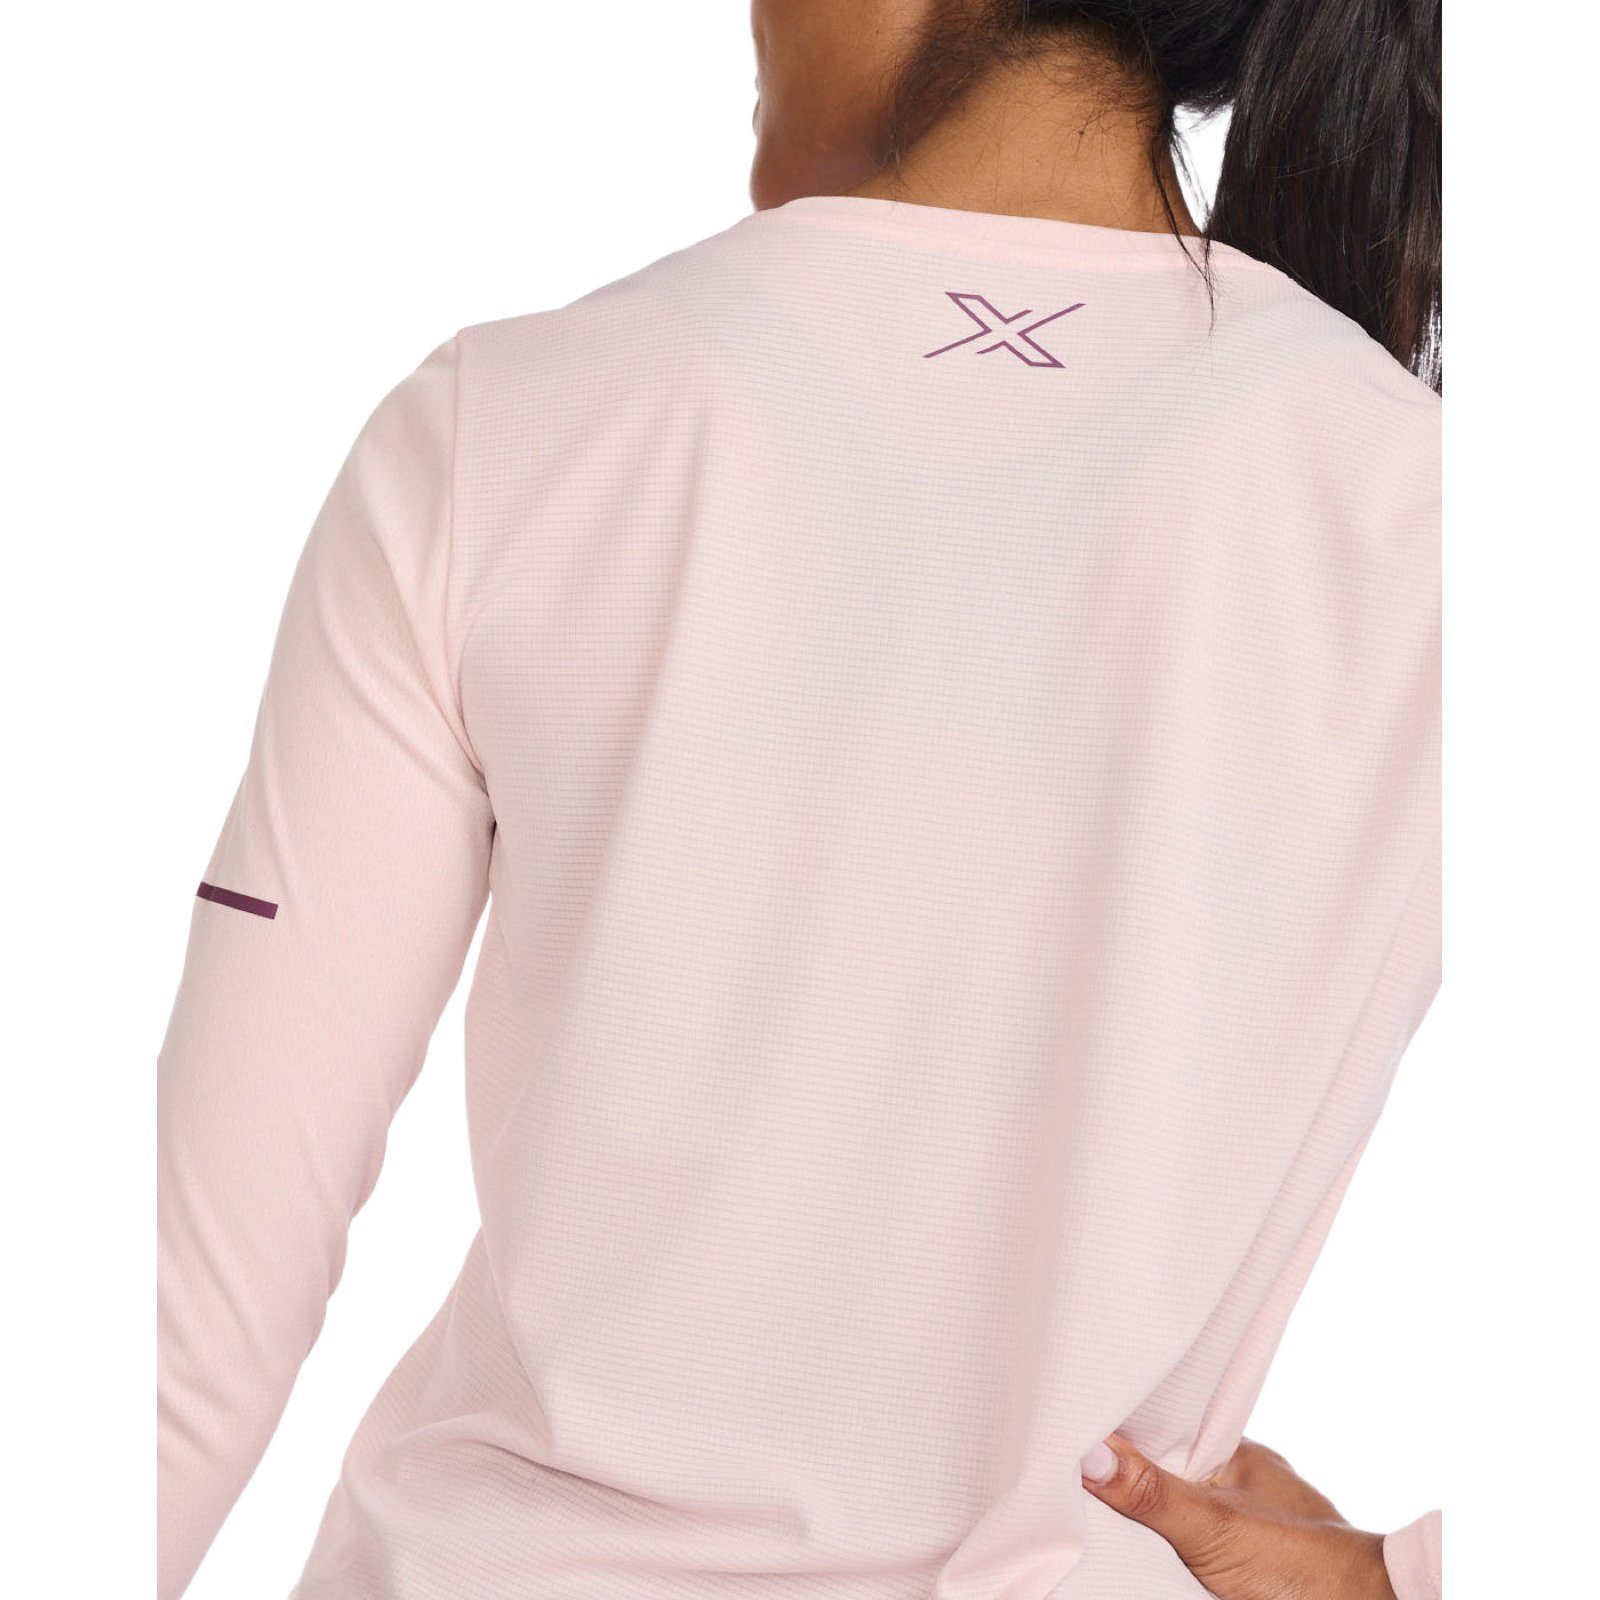 2xU Longsleeve Laufshirt Aero  X-VENT / Peach leicht Technologie Reflektierende Whip/Mulberry Reflective Logos ultra 